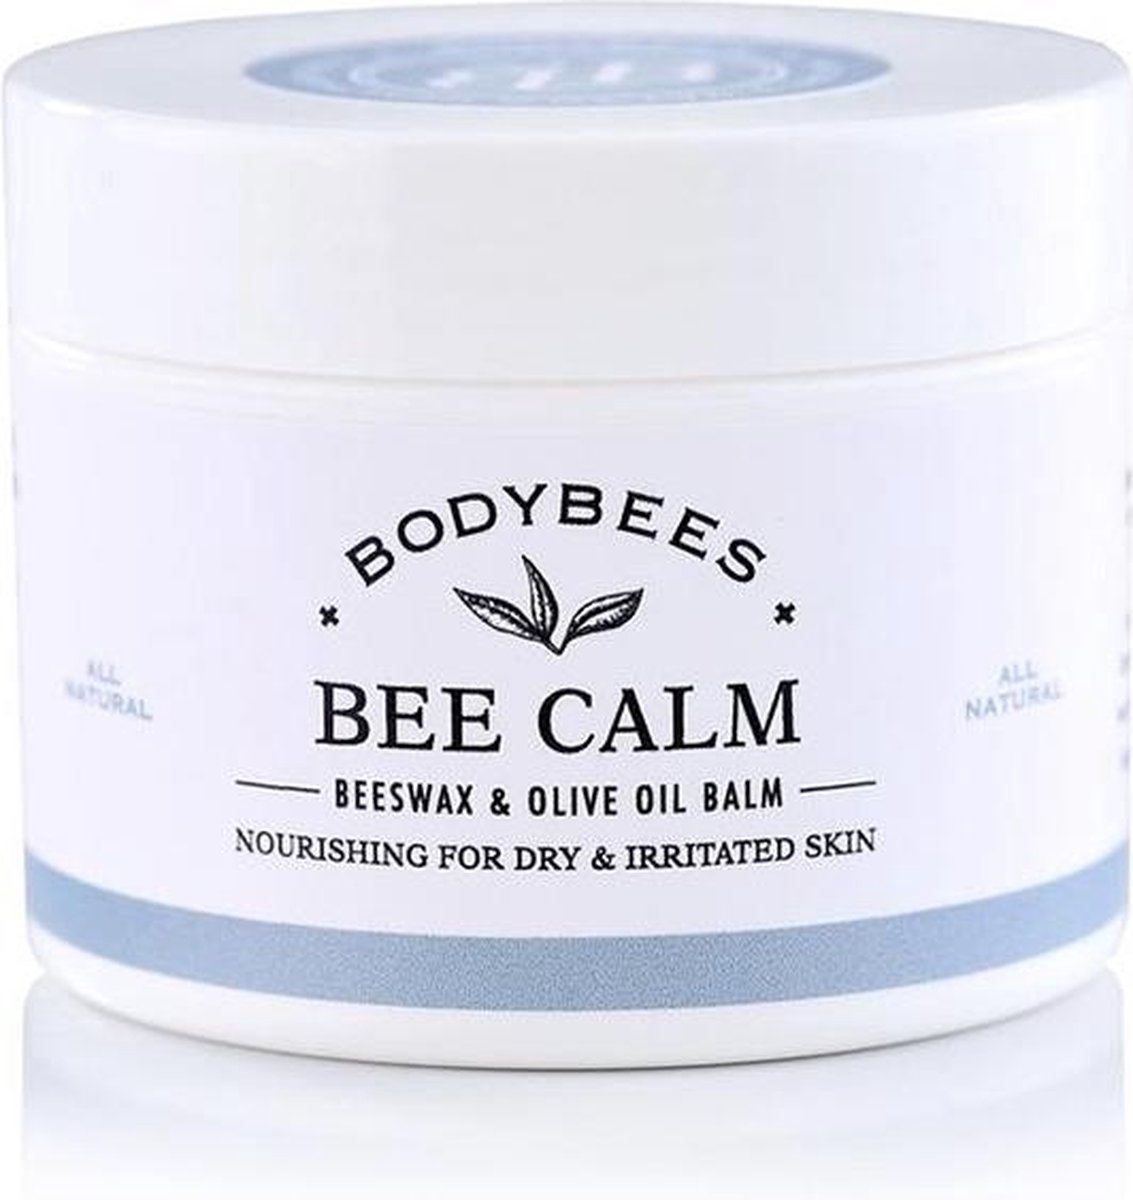 Bodybees Bee Calm 120 ml huidcreme voor de eczeem en psoriasis gevoelige huid - jeuk